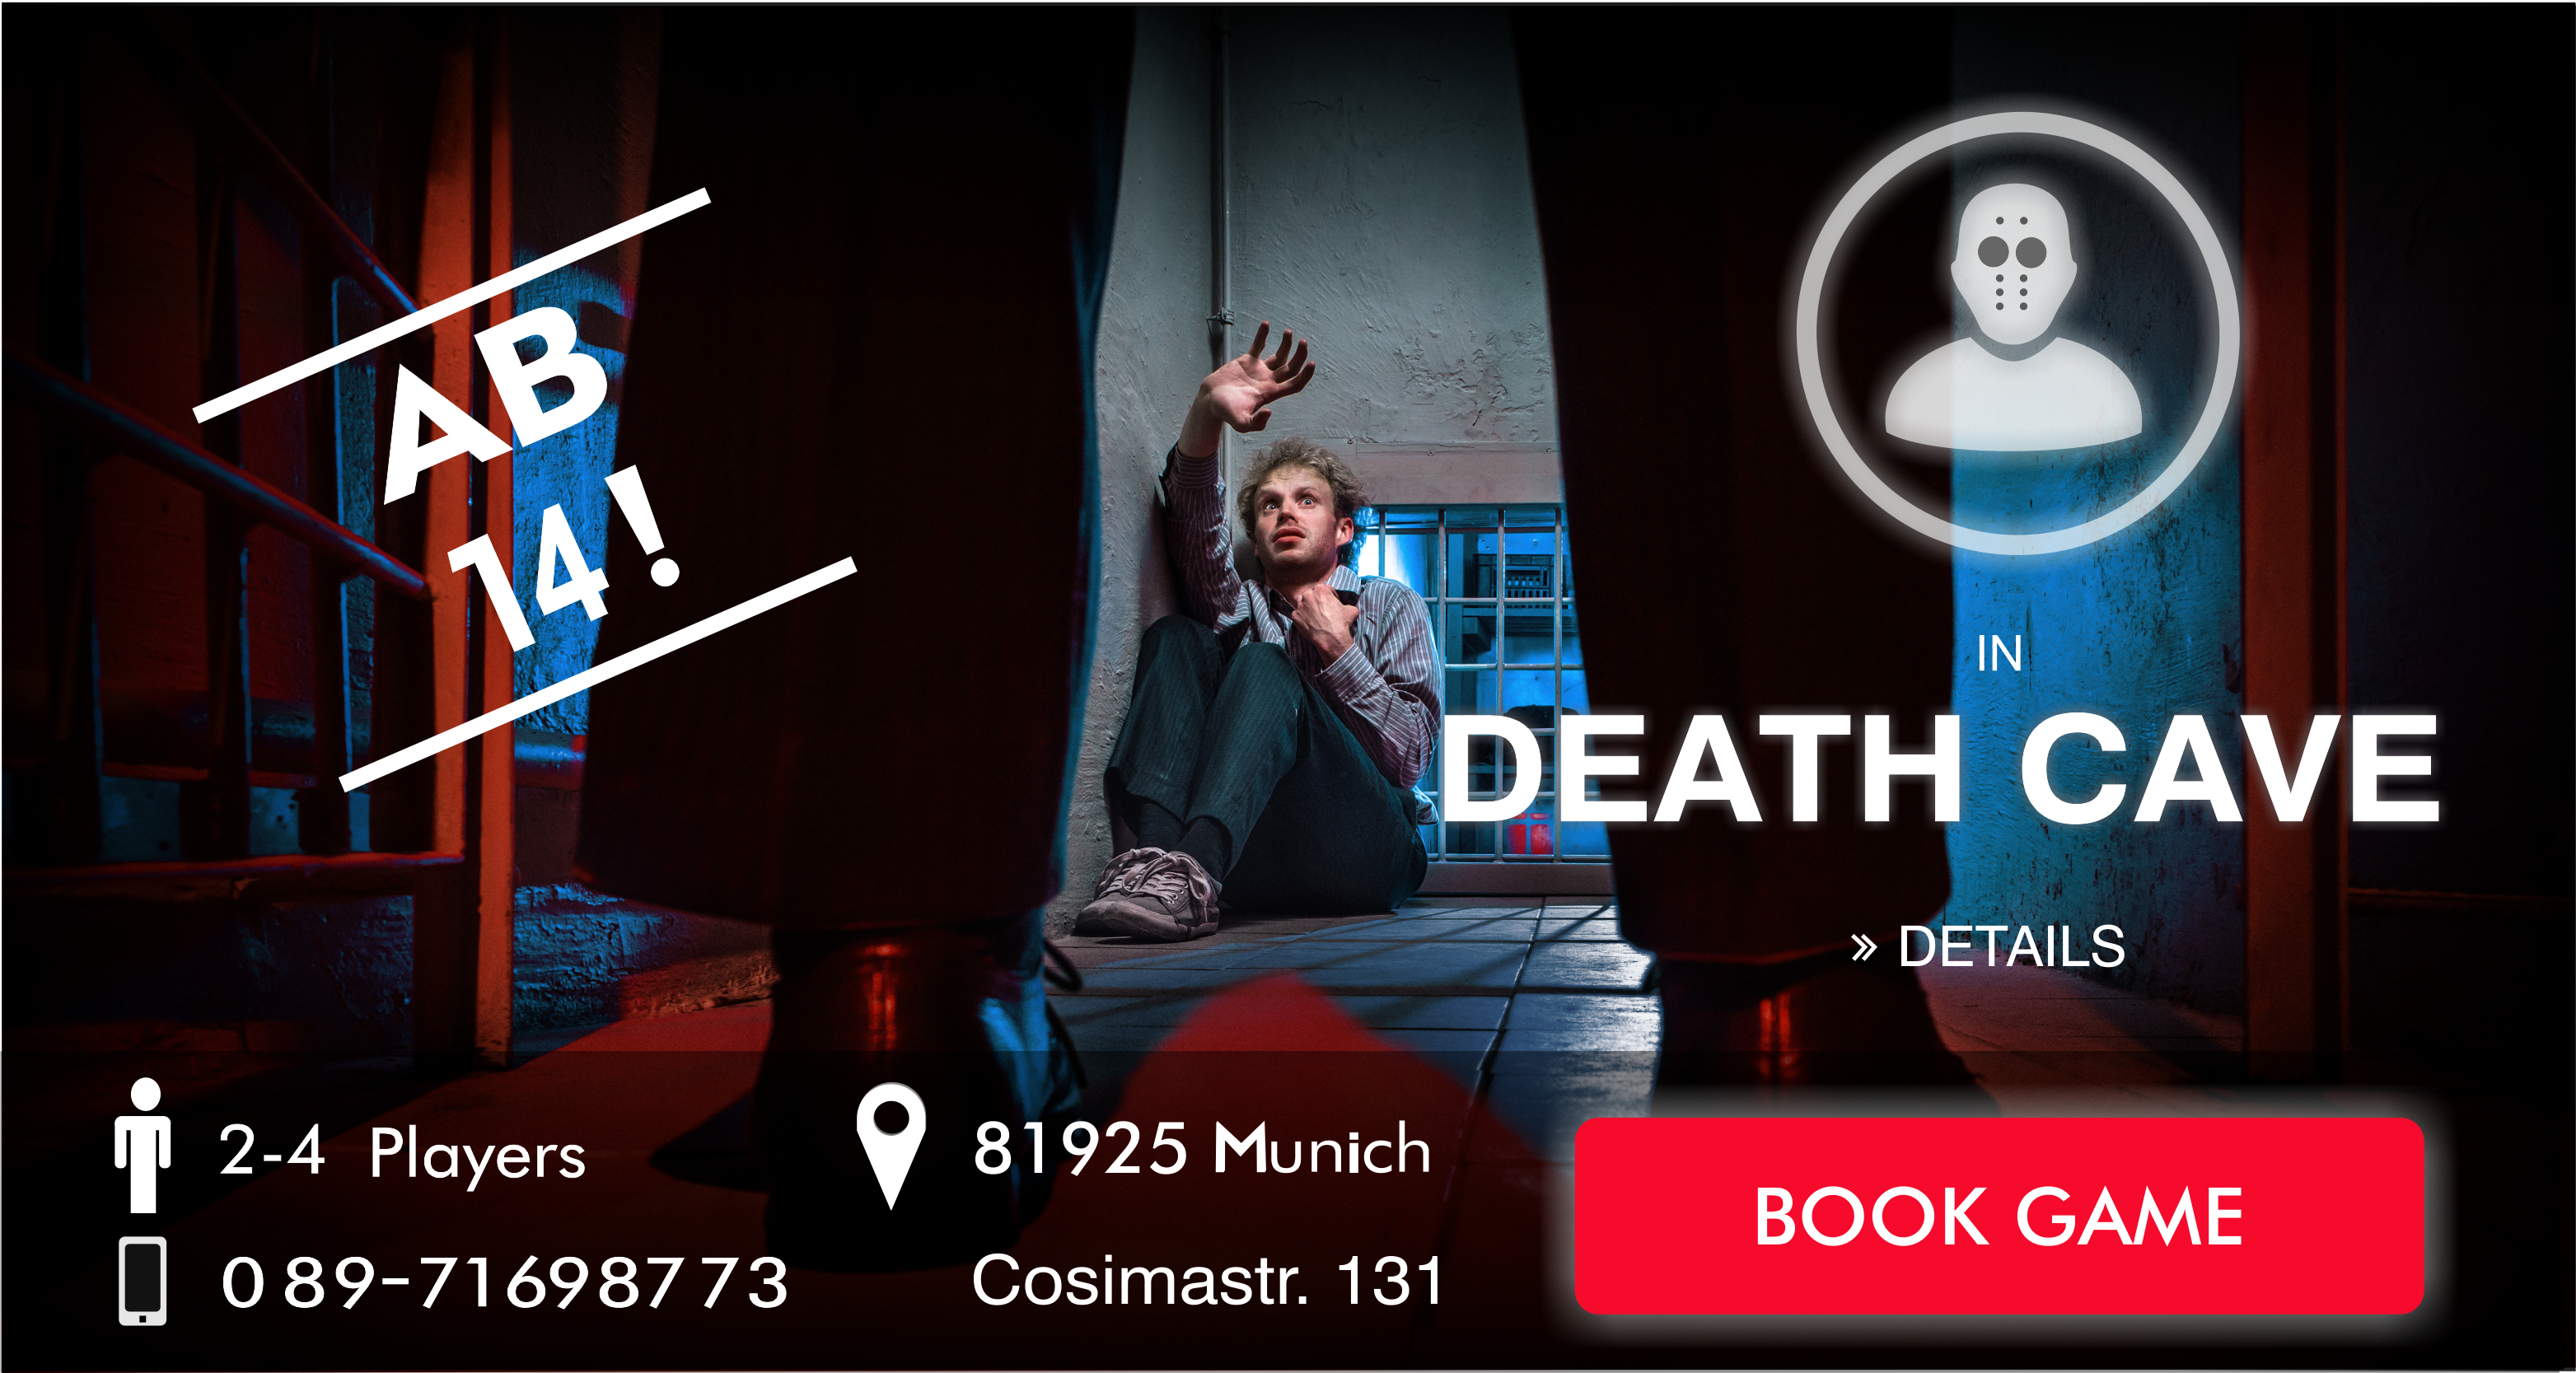 EscapeGame Munich - Death Cave